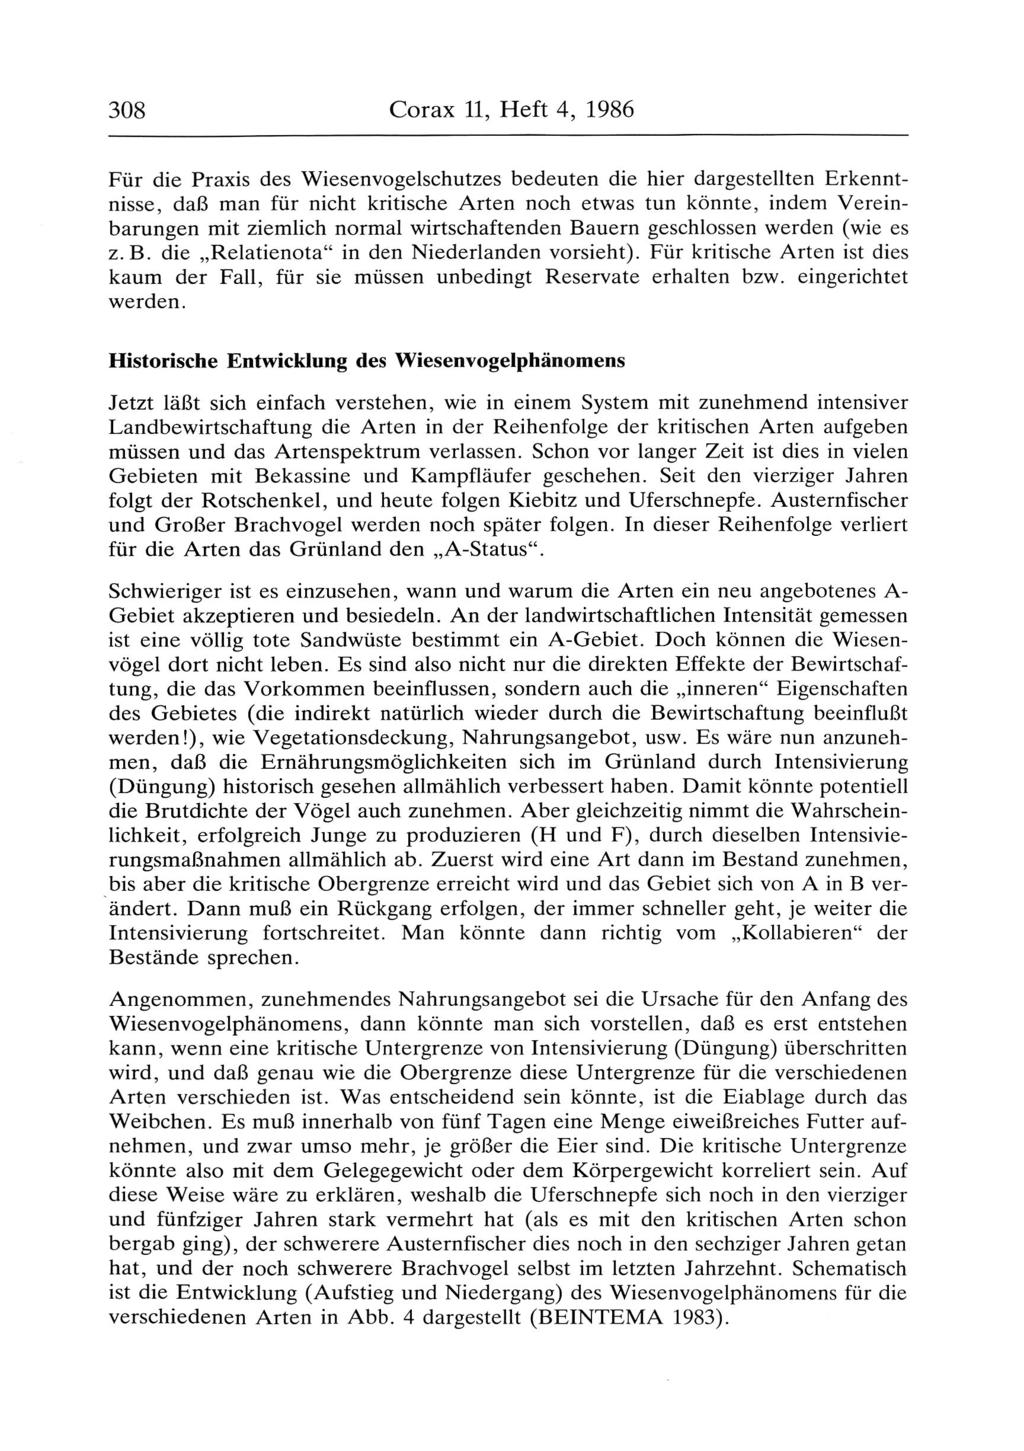 308 Corax 11, Heft 4, 1986 Für die Praxis des Wiesenvogelschutzes bedeuten die hier dargestellten Erkenntnisse, daß man für nicht kritische Arten noch etwas tun könnte, indem Vereinbarungen mit